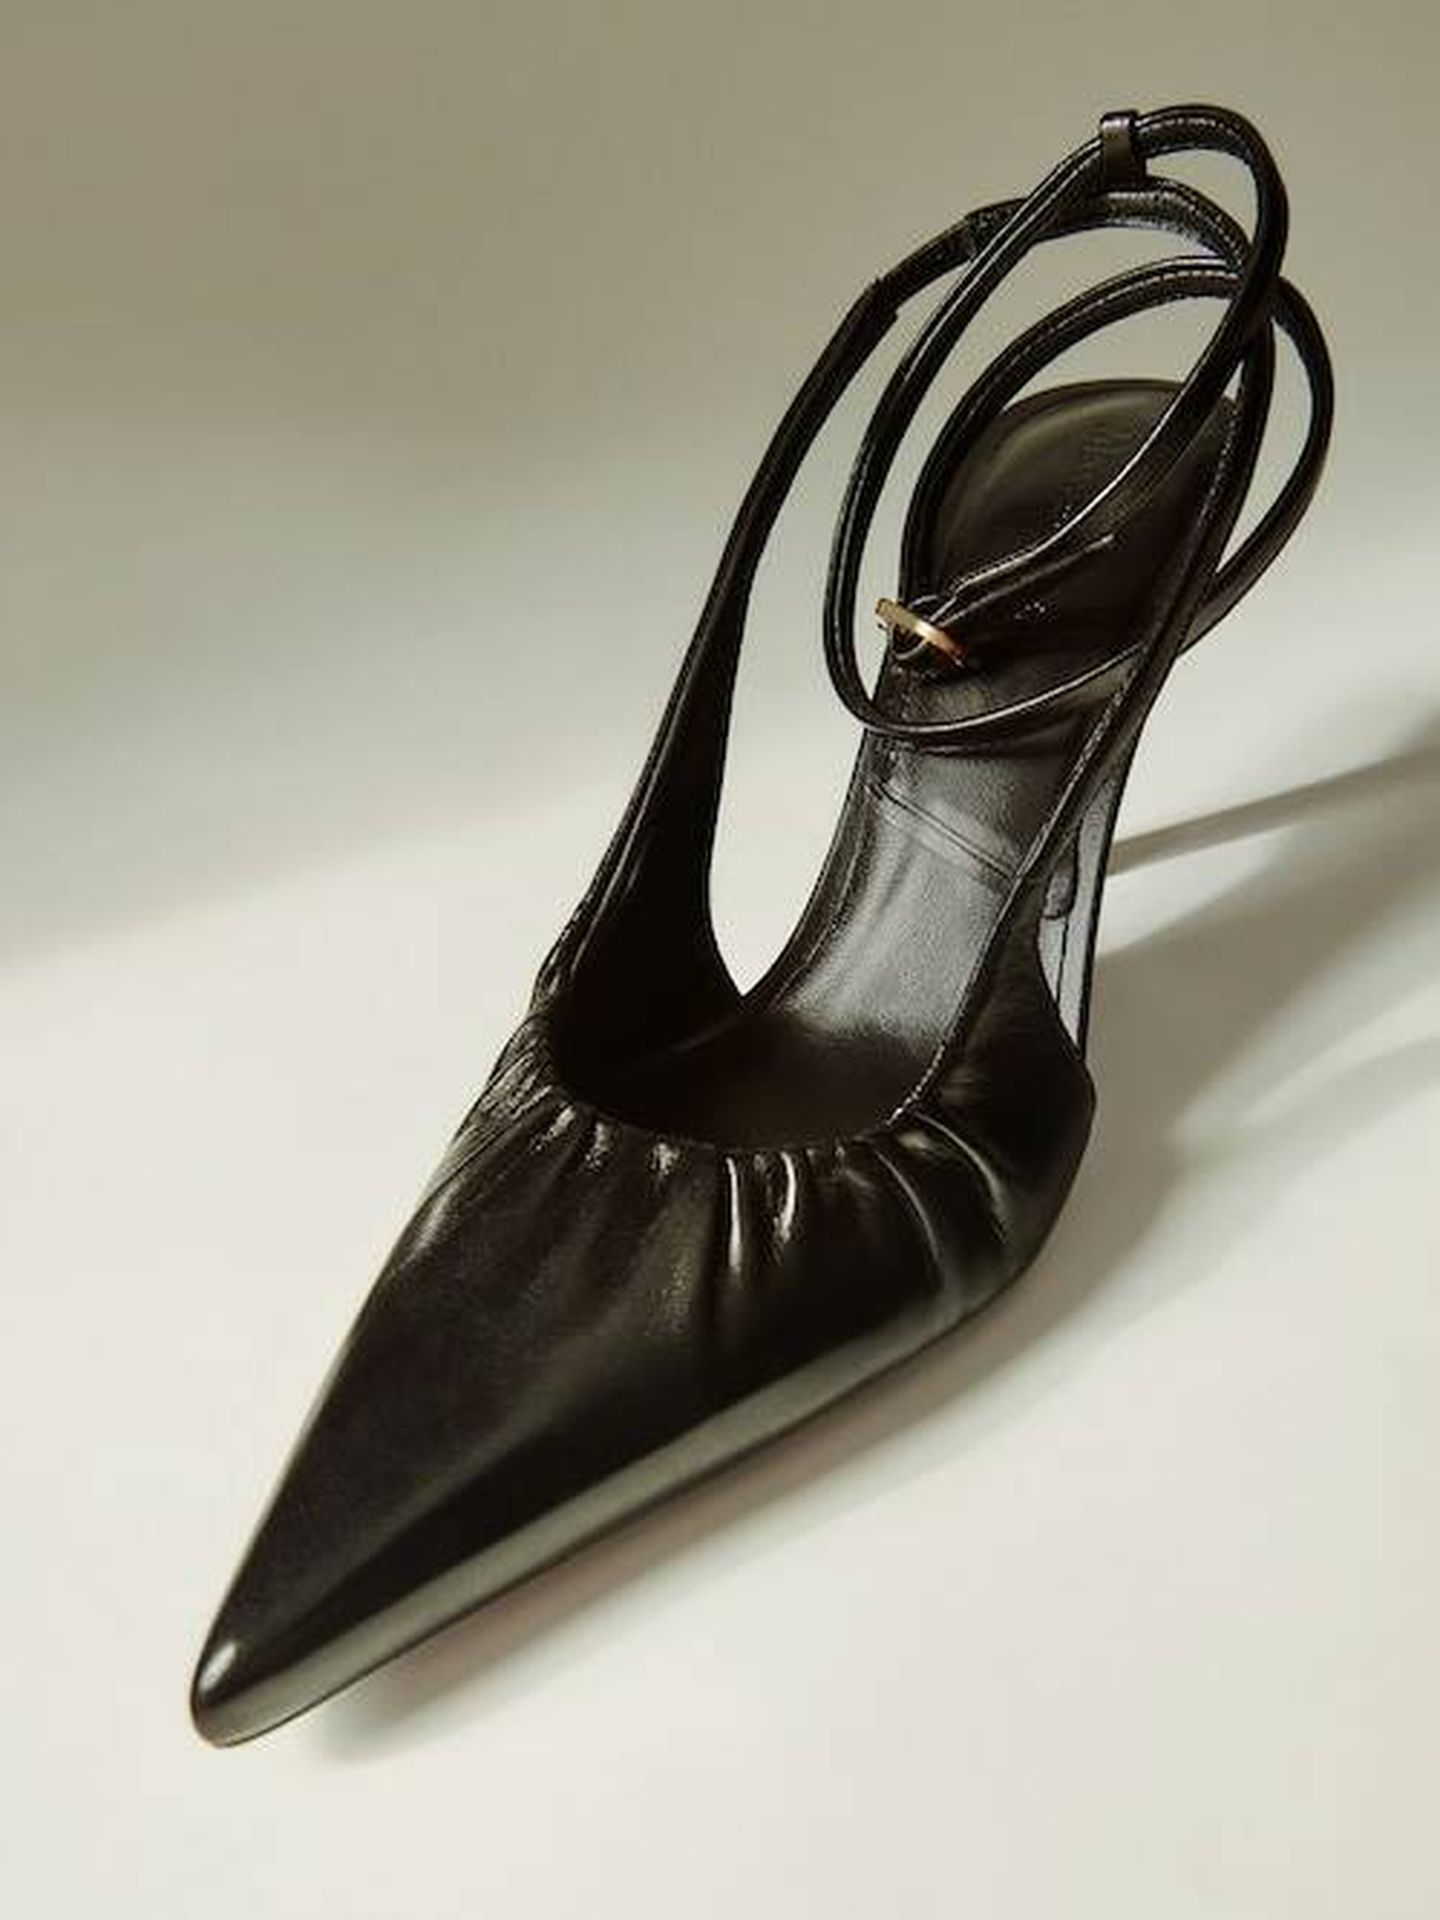 Los zapatos de salón 2 en 1 de Massimo Dutti. (Cortesía)